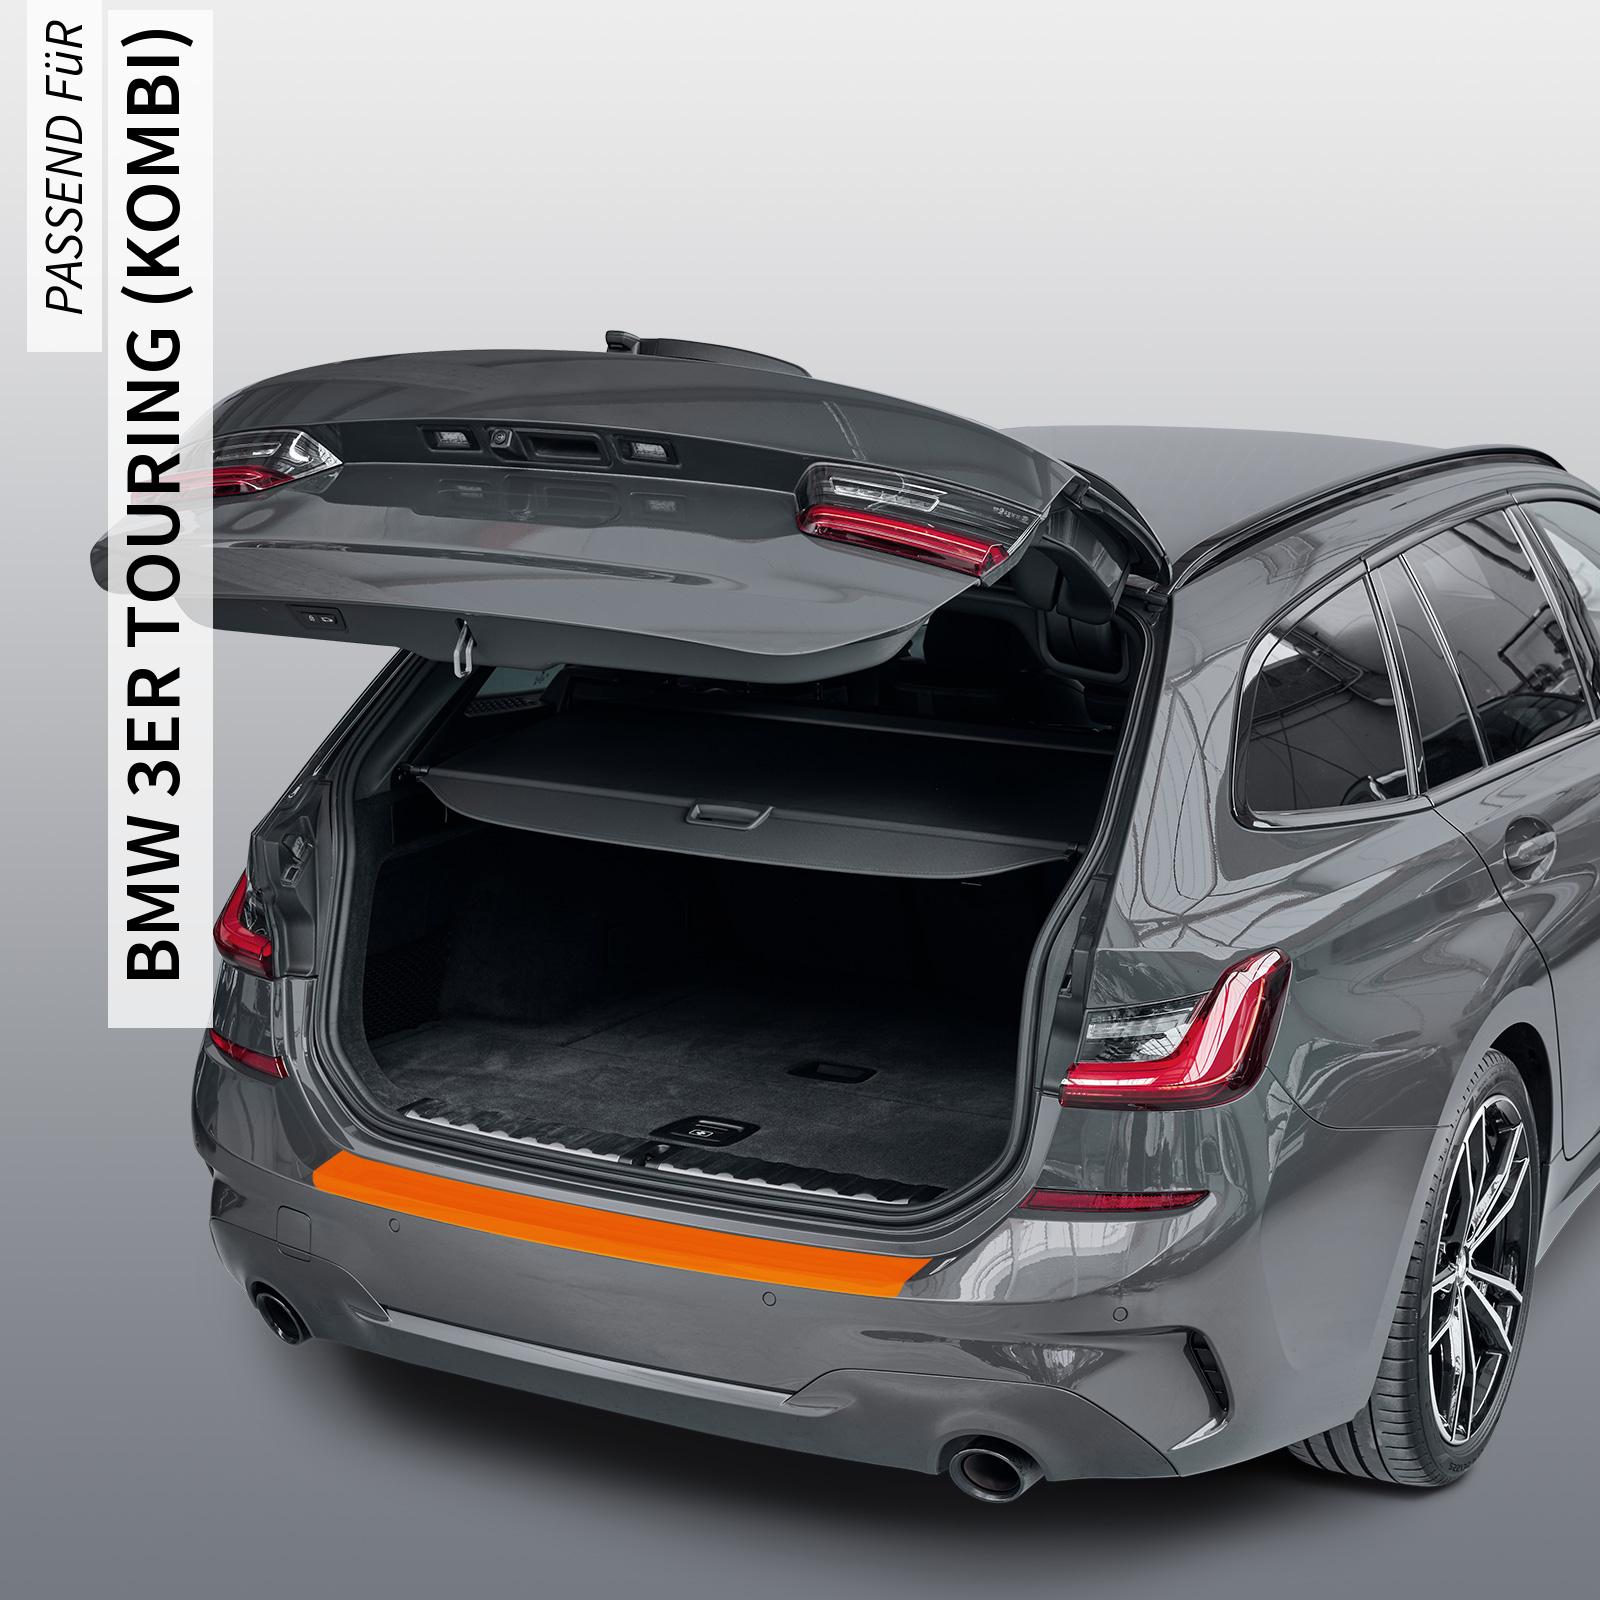 Ladekantenschutzfolie - Transparent Glatt MATT 110 µm stark  für BMW 3er Touring (Kombi) Typ E91, BJ 2006-2012